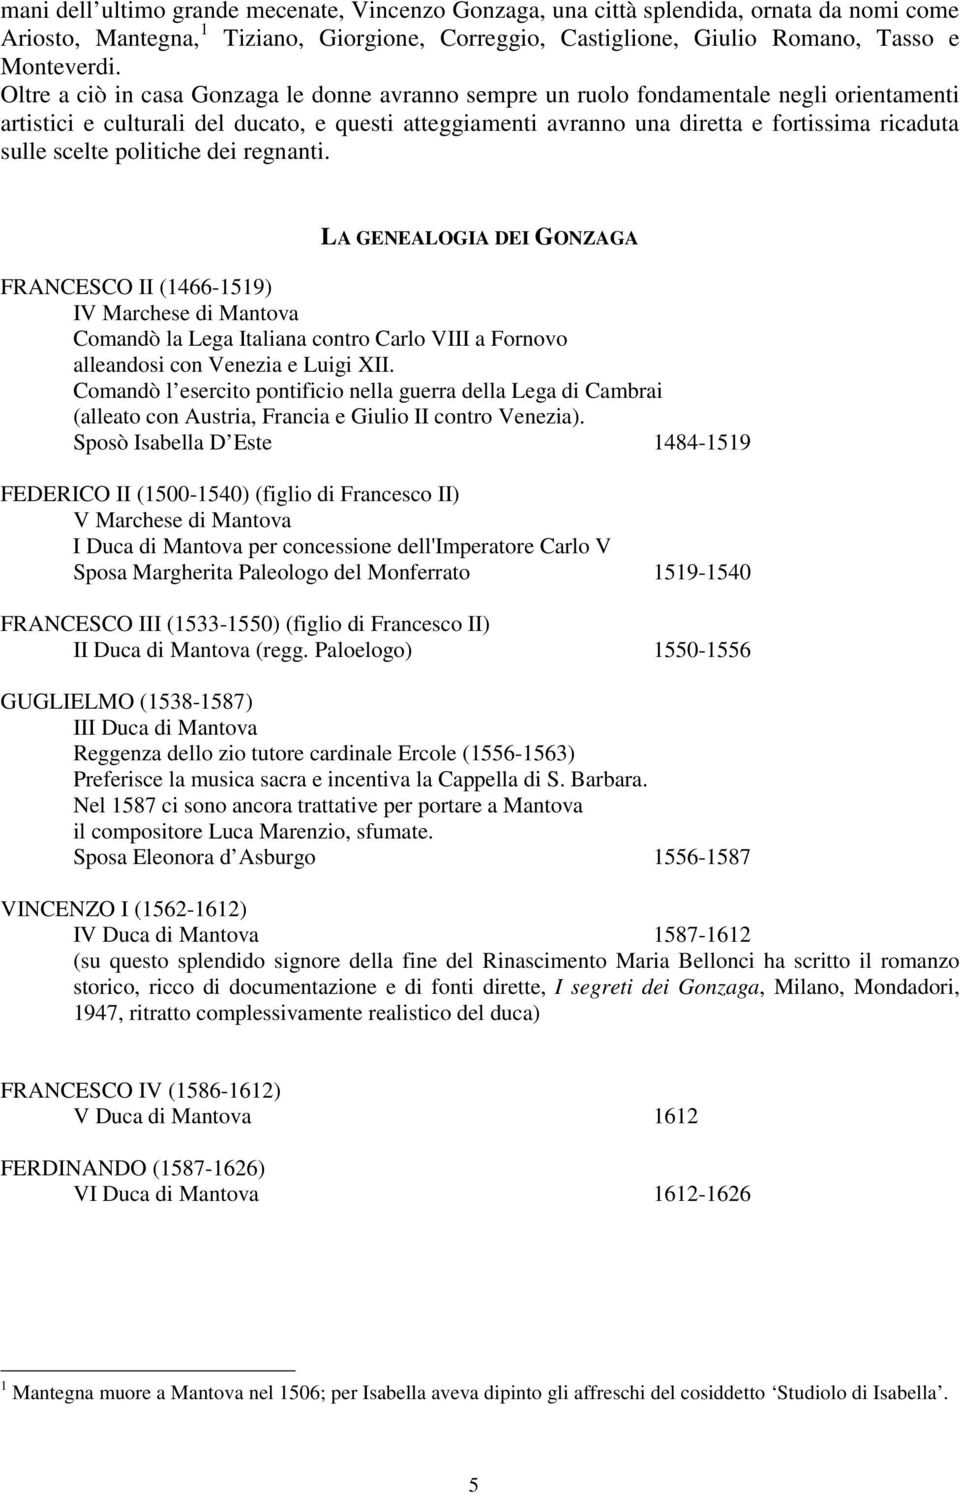 scelte politiche dei regnanti. LA GENEALOGIA DEI GONZAGA FRANCESCO II (1466-1519) IV Marchese di Mantova Comandò la Lega Italiana contro Carlo VIII a Fornovo alleandosi con Venezia e Luigi XII.